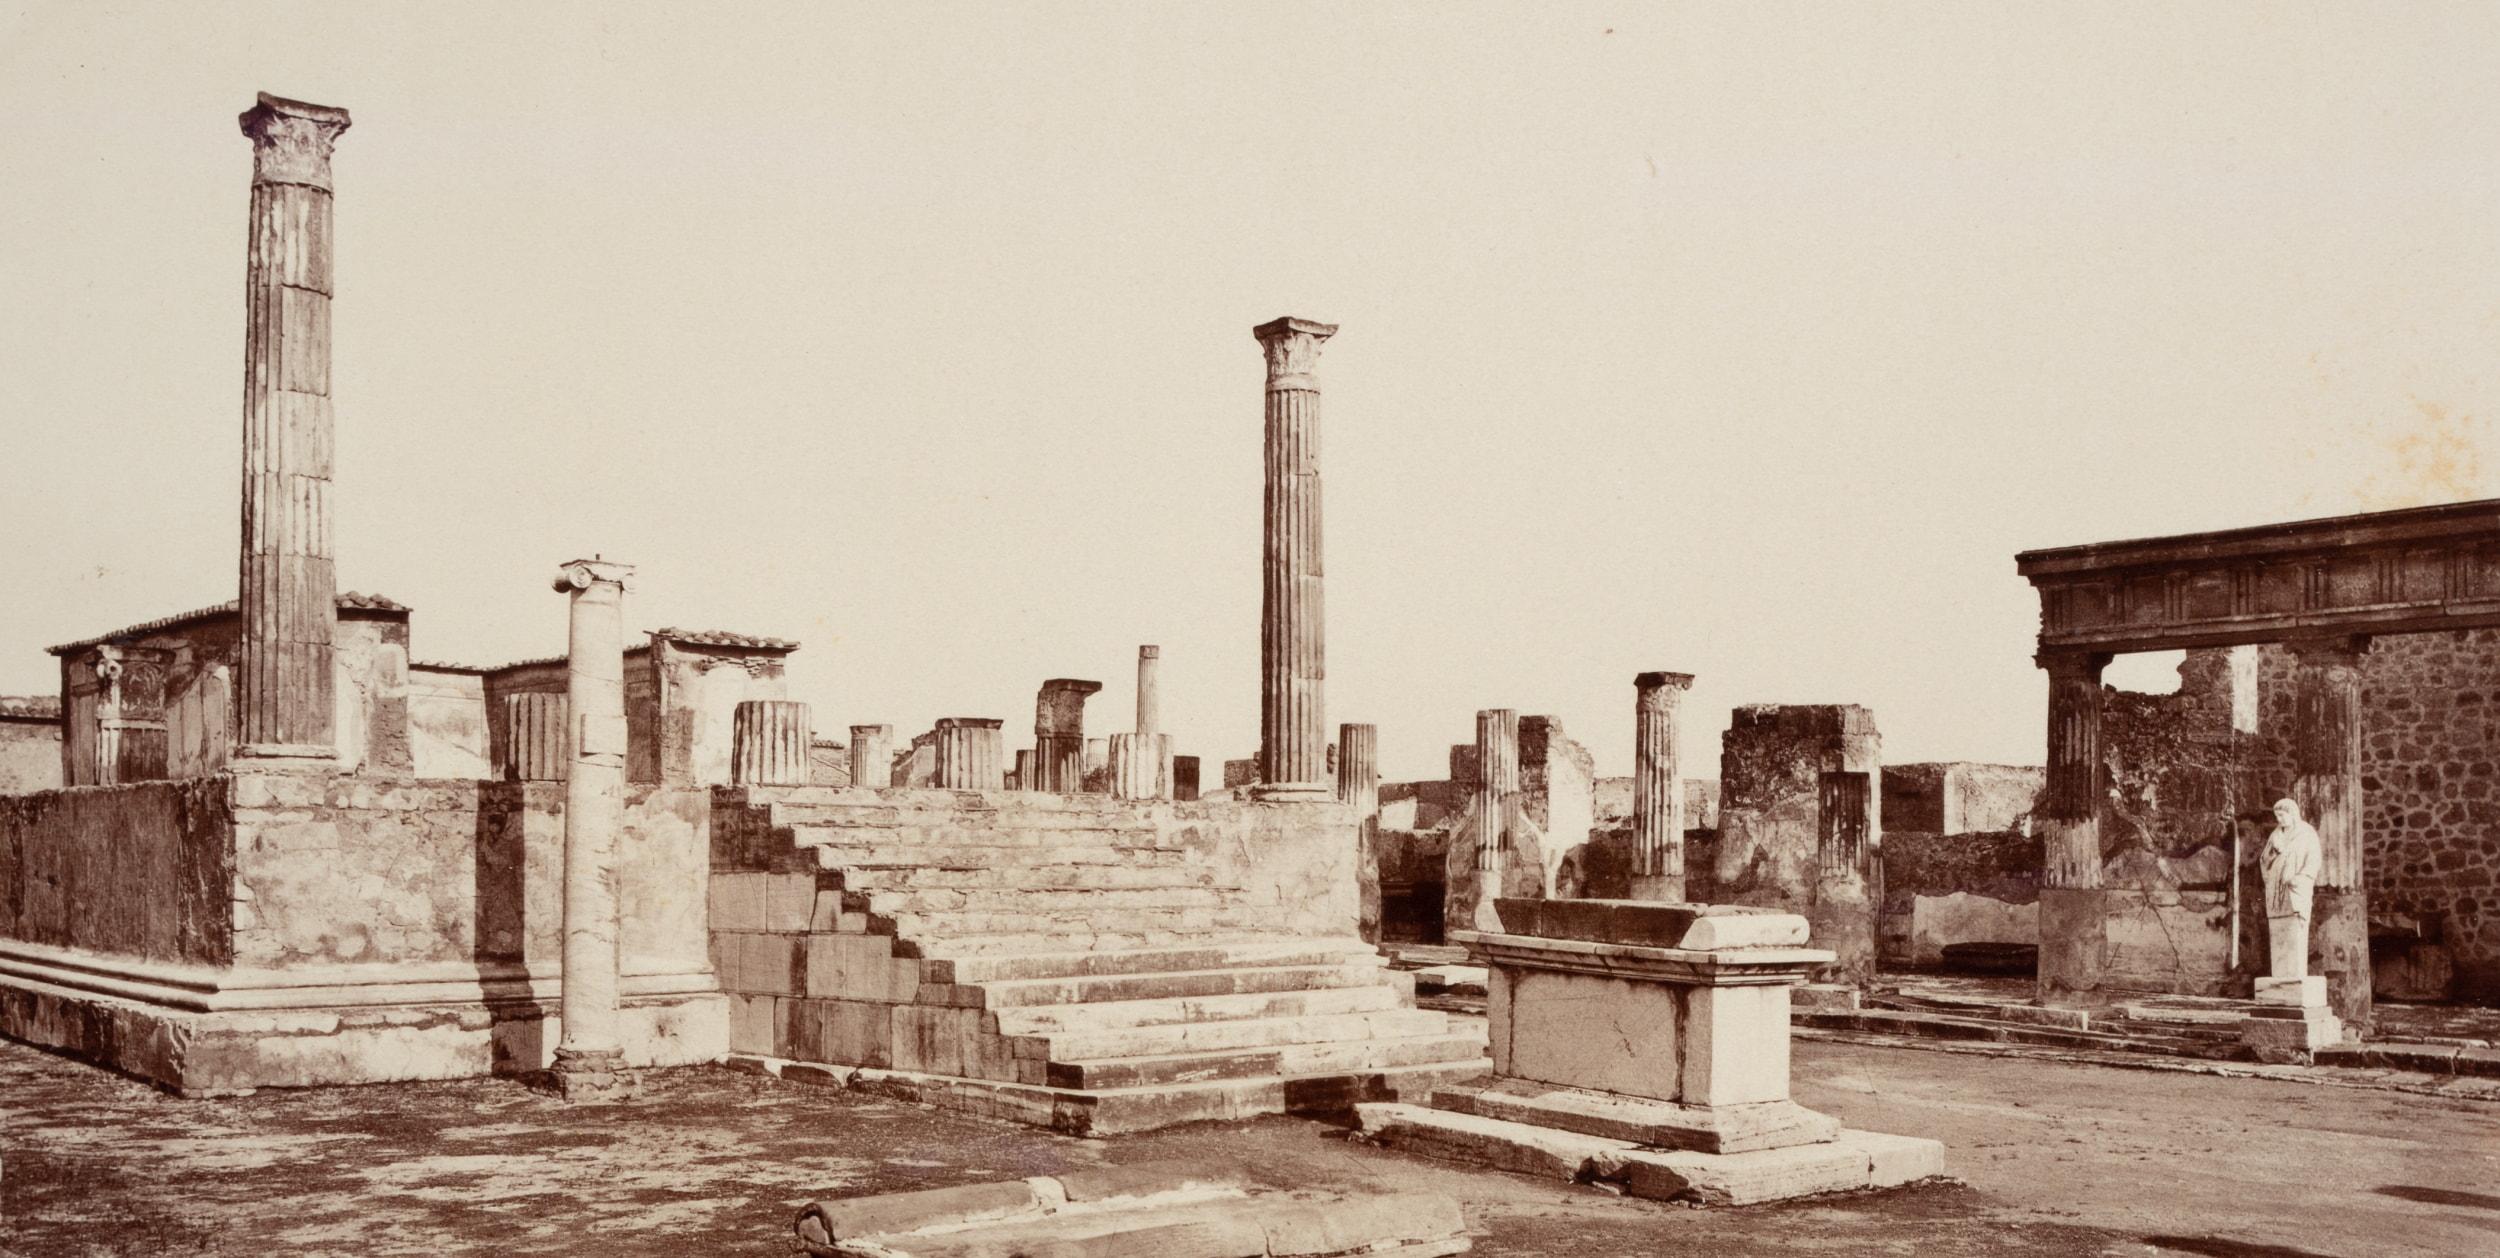 Temple of Apollo, Pompei - Photograph by Fratelli Alinari